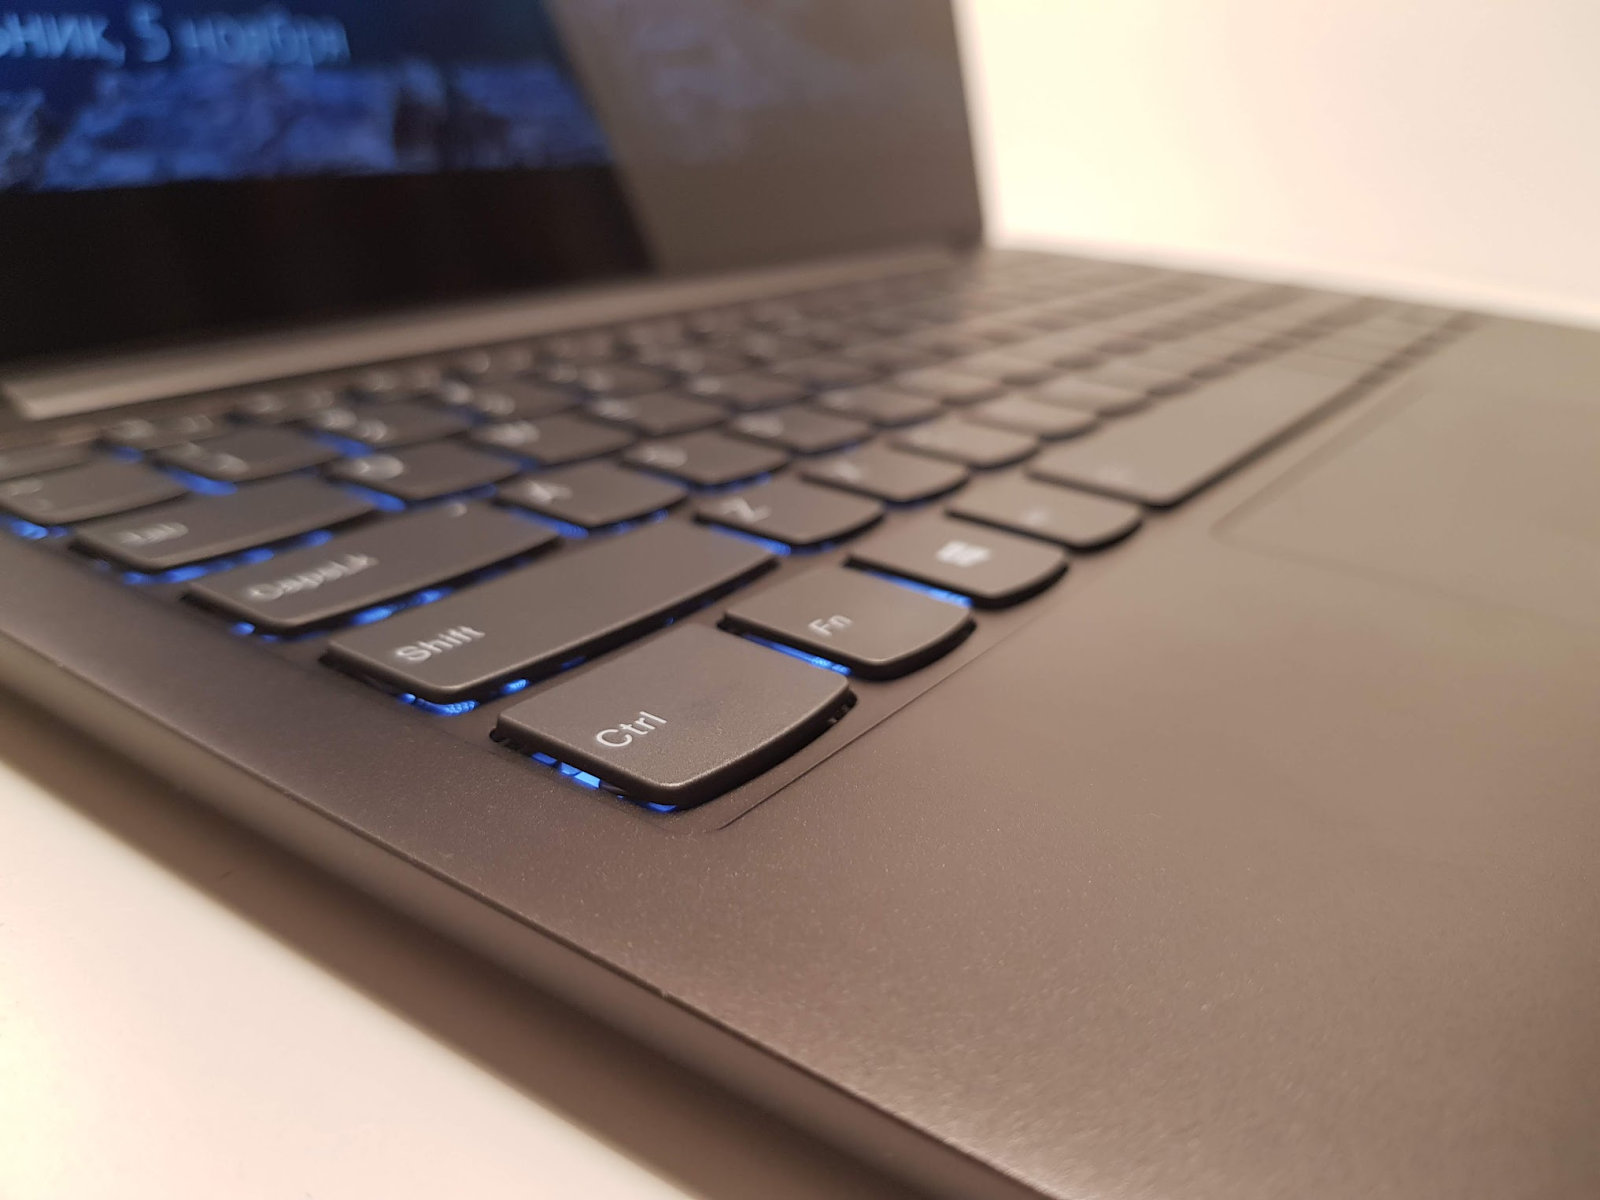 Обзор ноутбука Lenovo S730-13 (2018): мощное железо в стильном алюминиевом корпусе - 12